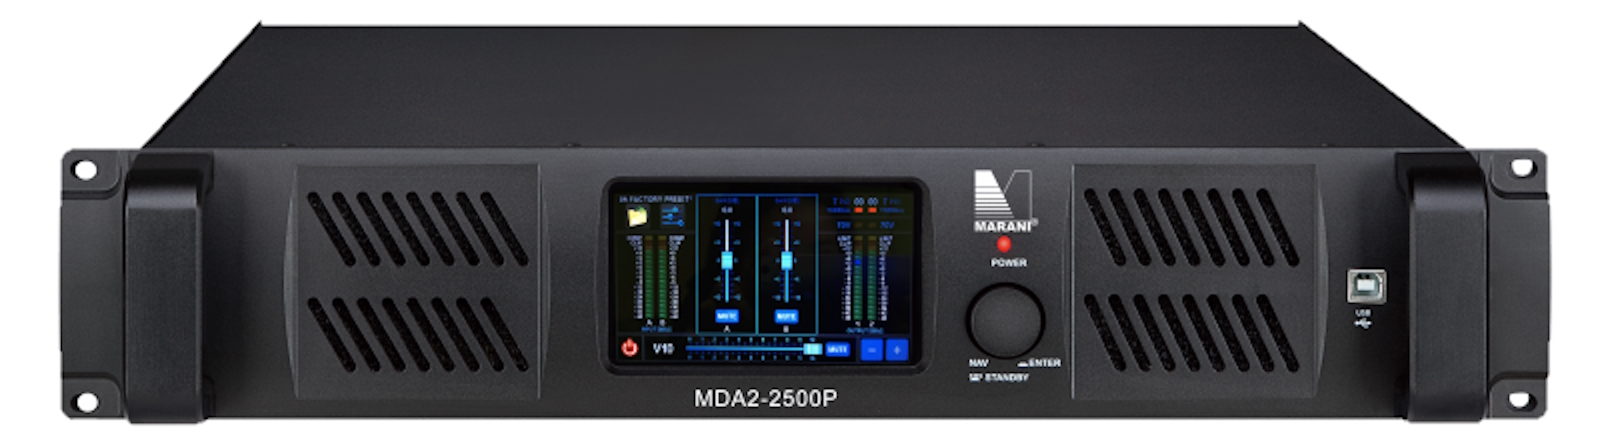 Усилители двухканальные Marani MDA2-2500P DANTE усилители двухканальные marani mda2 9000dp